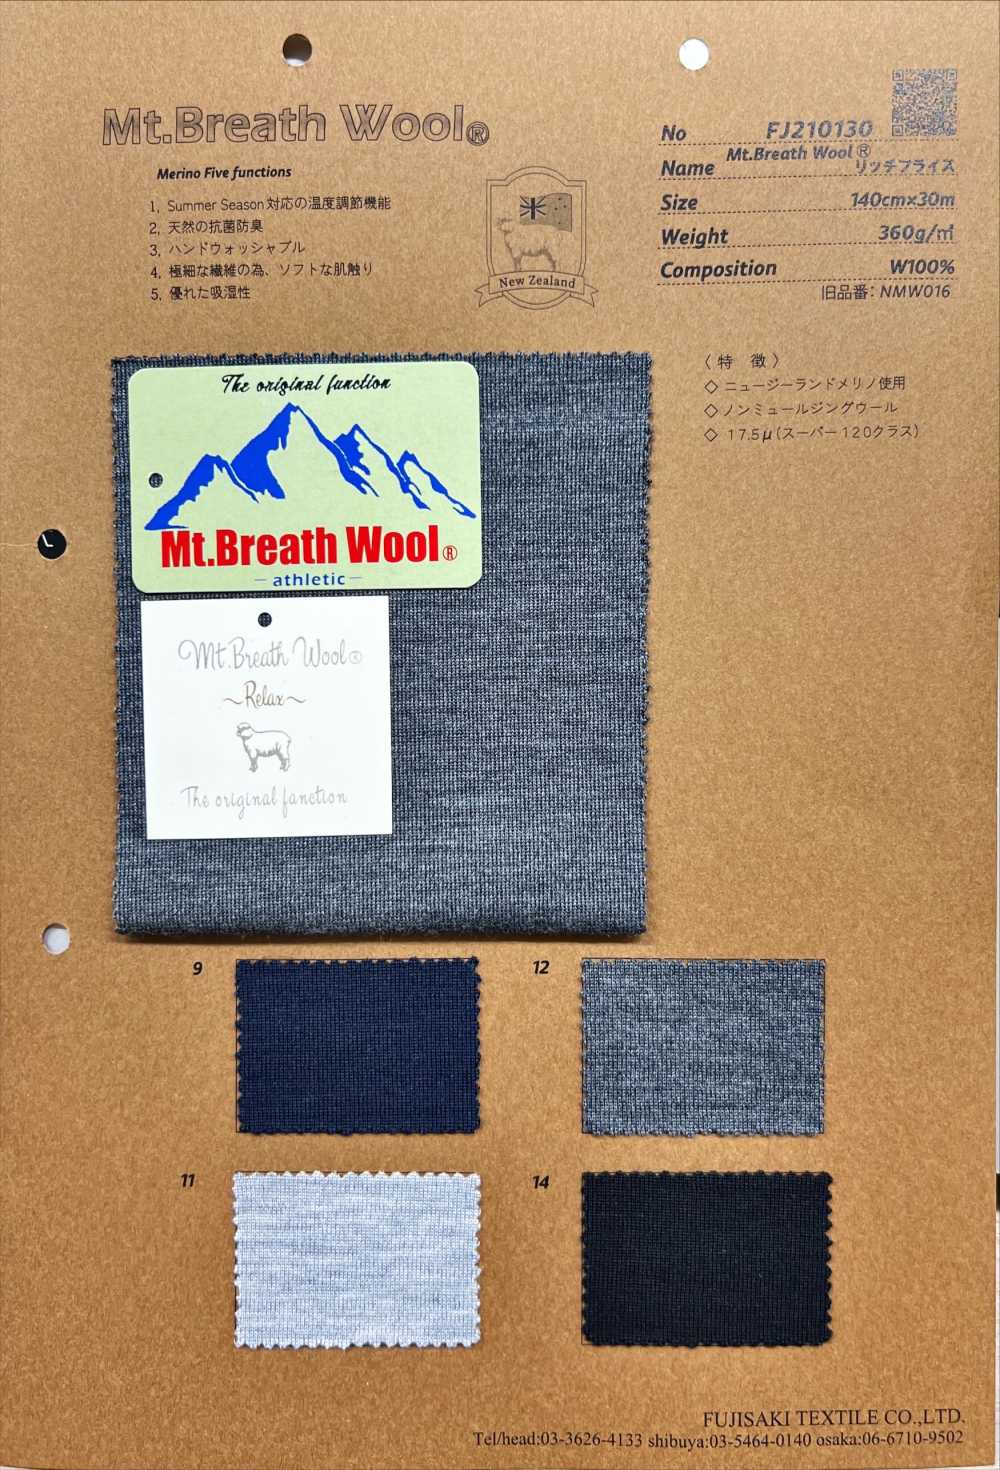 FJ210130 Mt.Breath Wollstretch-Rundrippe[Textilgewebe] Fujisaki Textile